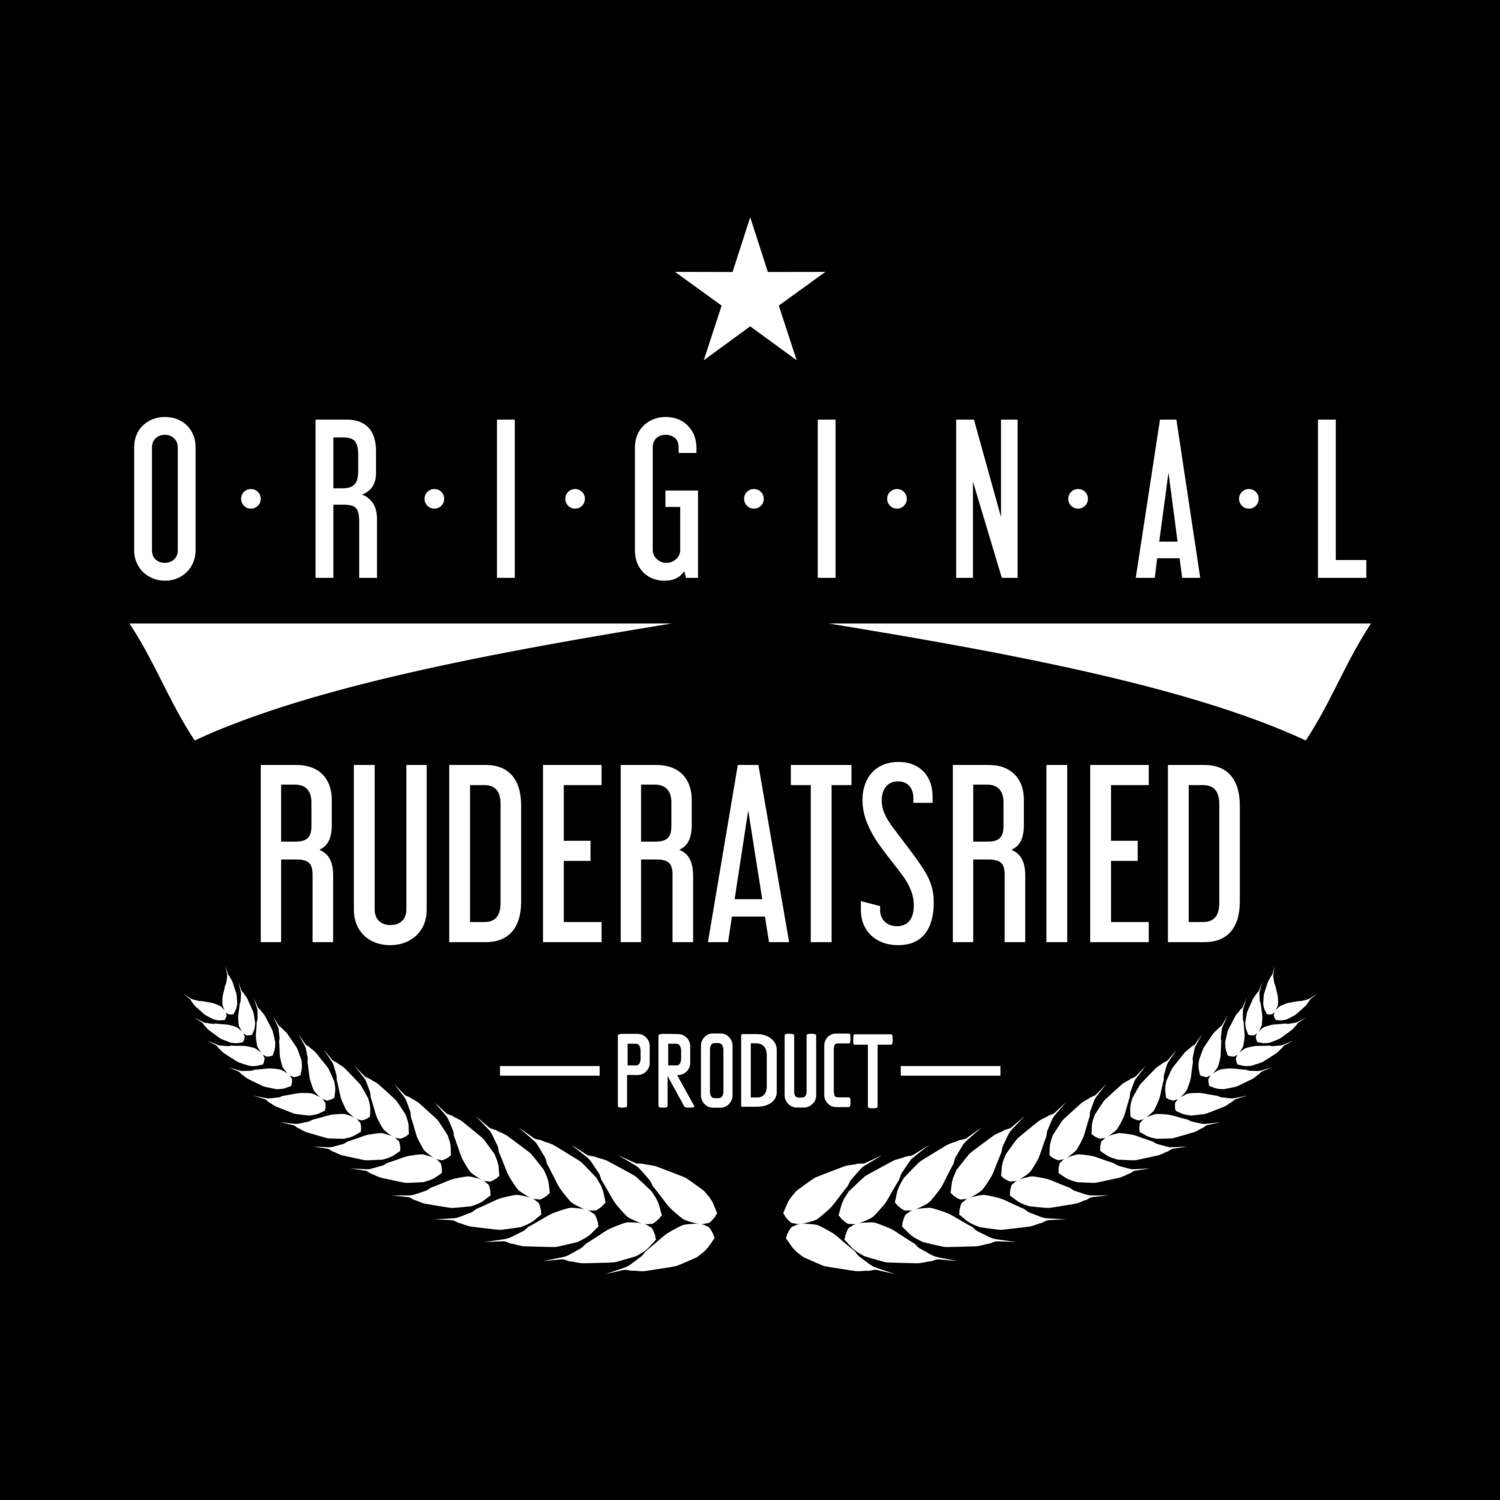 Ruderatsried T-Shirt »Original Product«